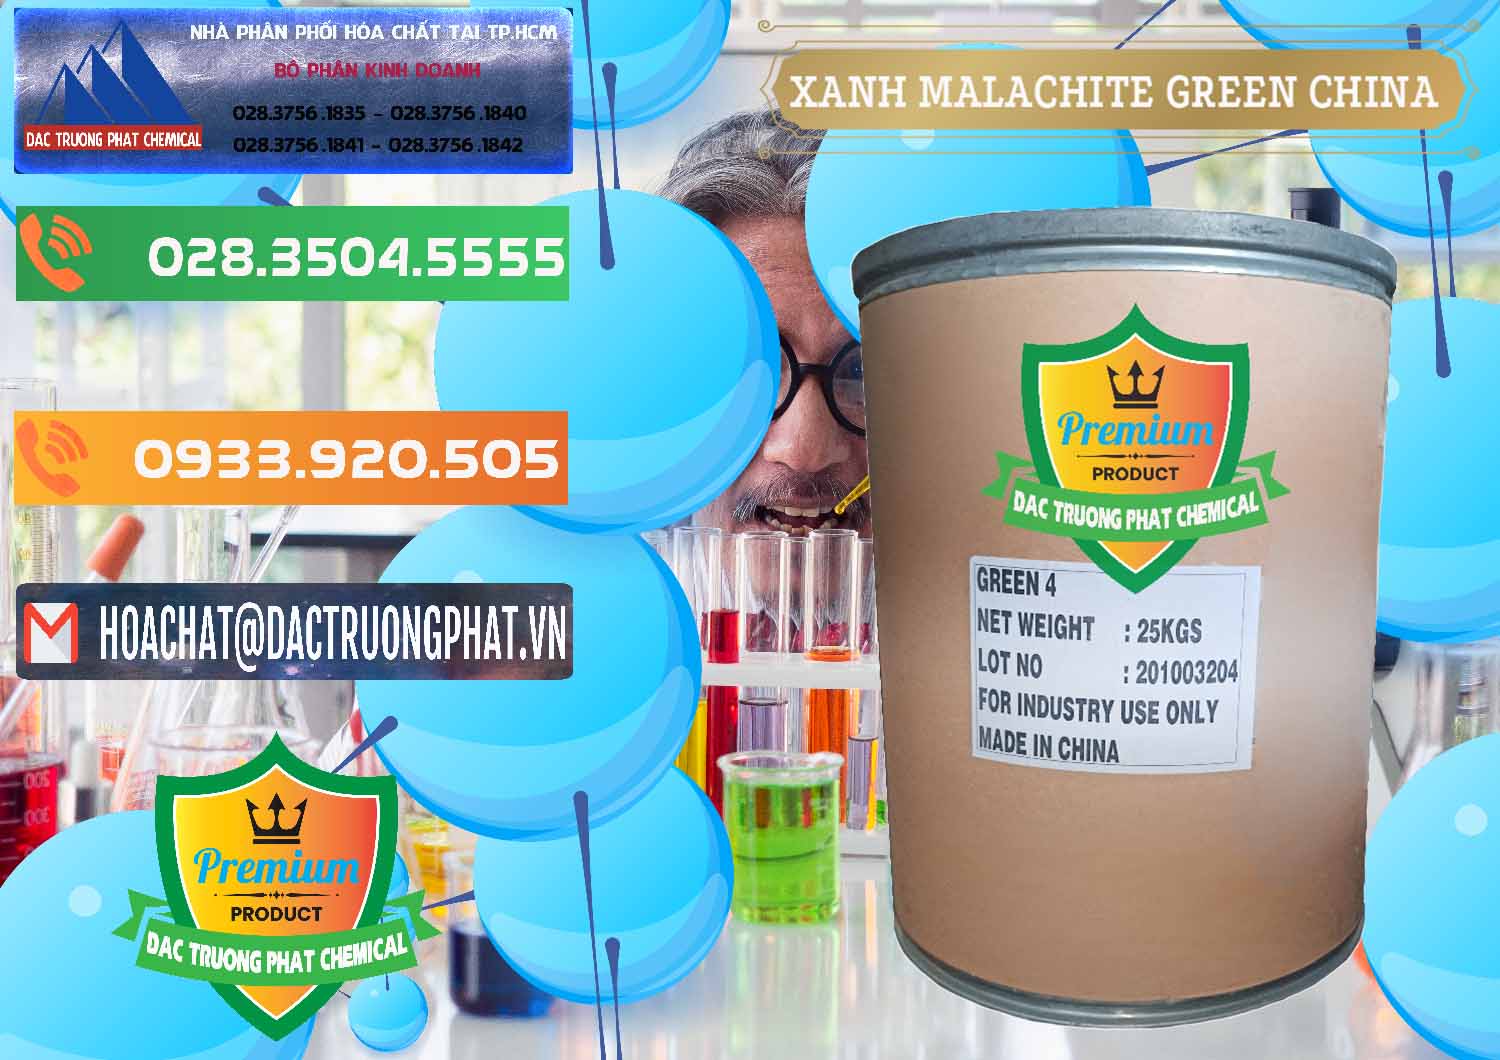 Đơn vị chuyên kinh doanh và bán Xanh Malachite Green Trung Quốc China - 0325 - Đơn vị chuyên cung cấp và nhập khẩu hóa chất tại TP.HCM - hoachatxulynuoc.com.vn